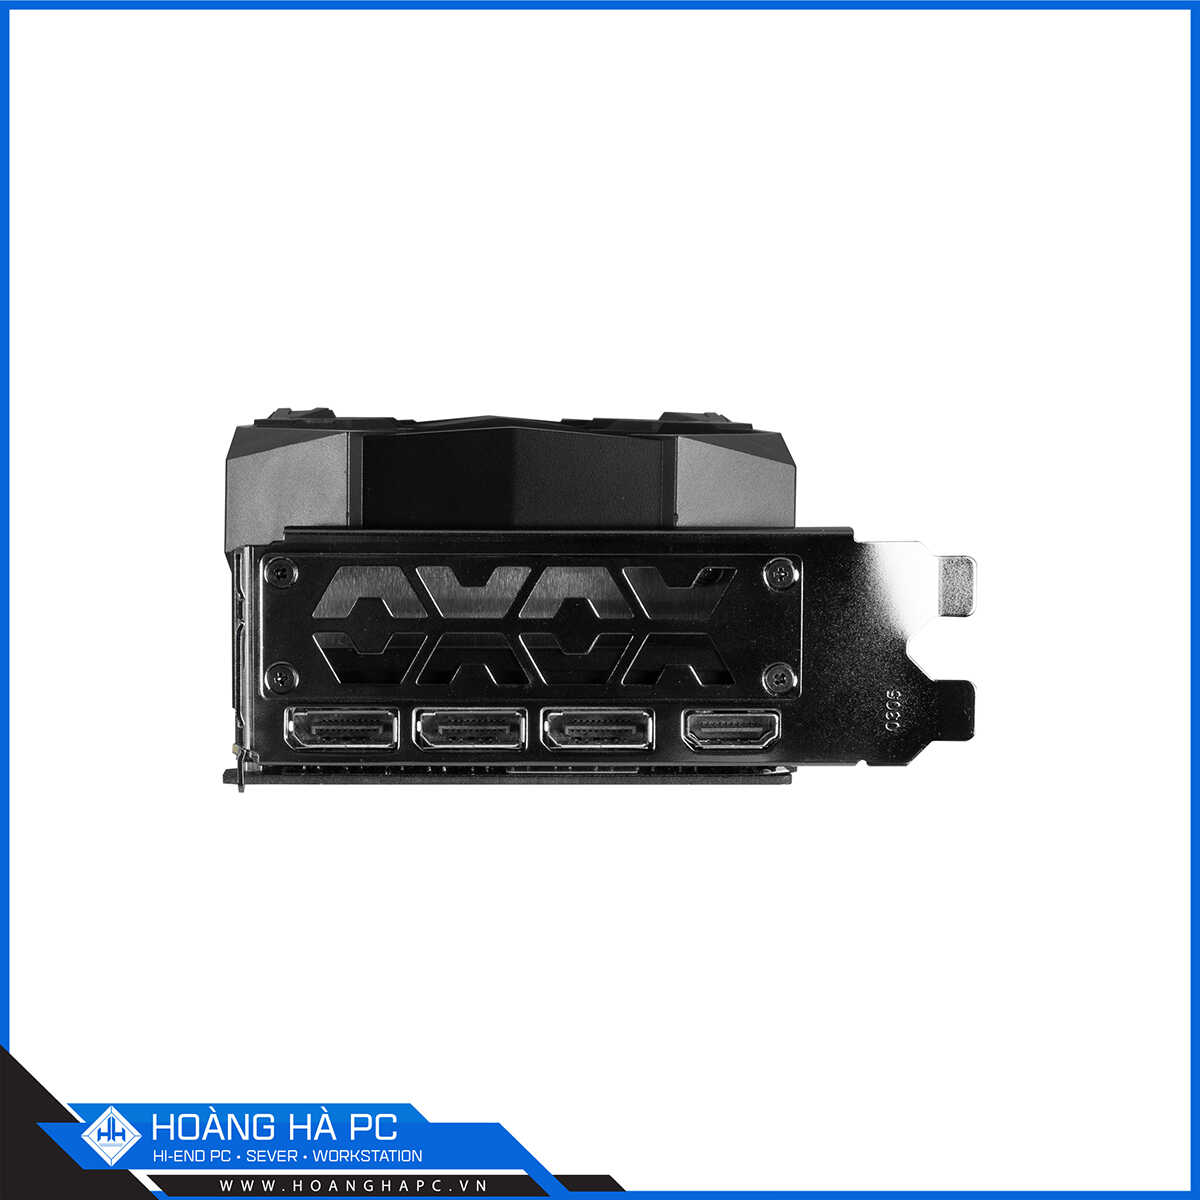 VGA GALAX RTX 3080 SG (1-Click OC) 10G (10GB GDD6X, 320-bit, HDMI +DP, 2x8-pin)